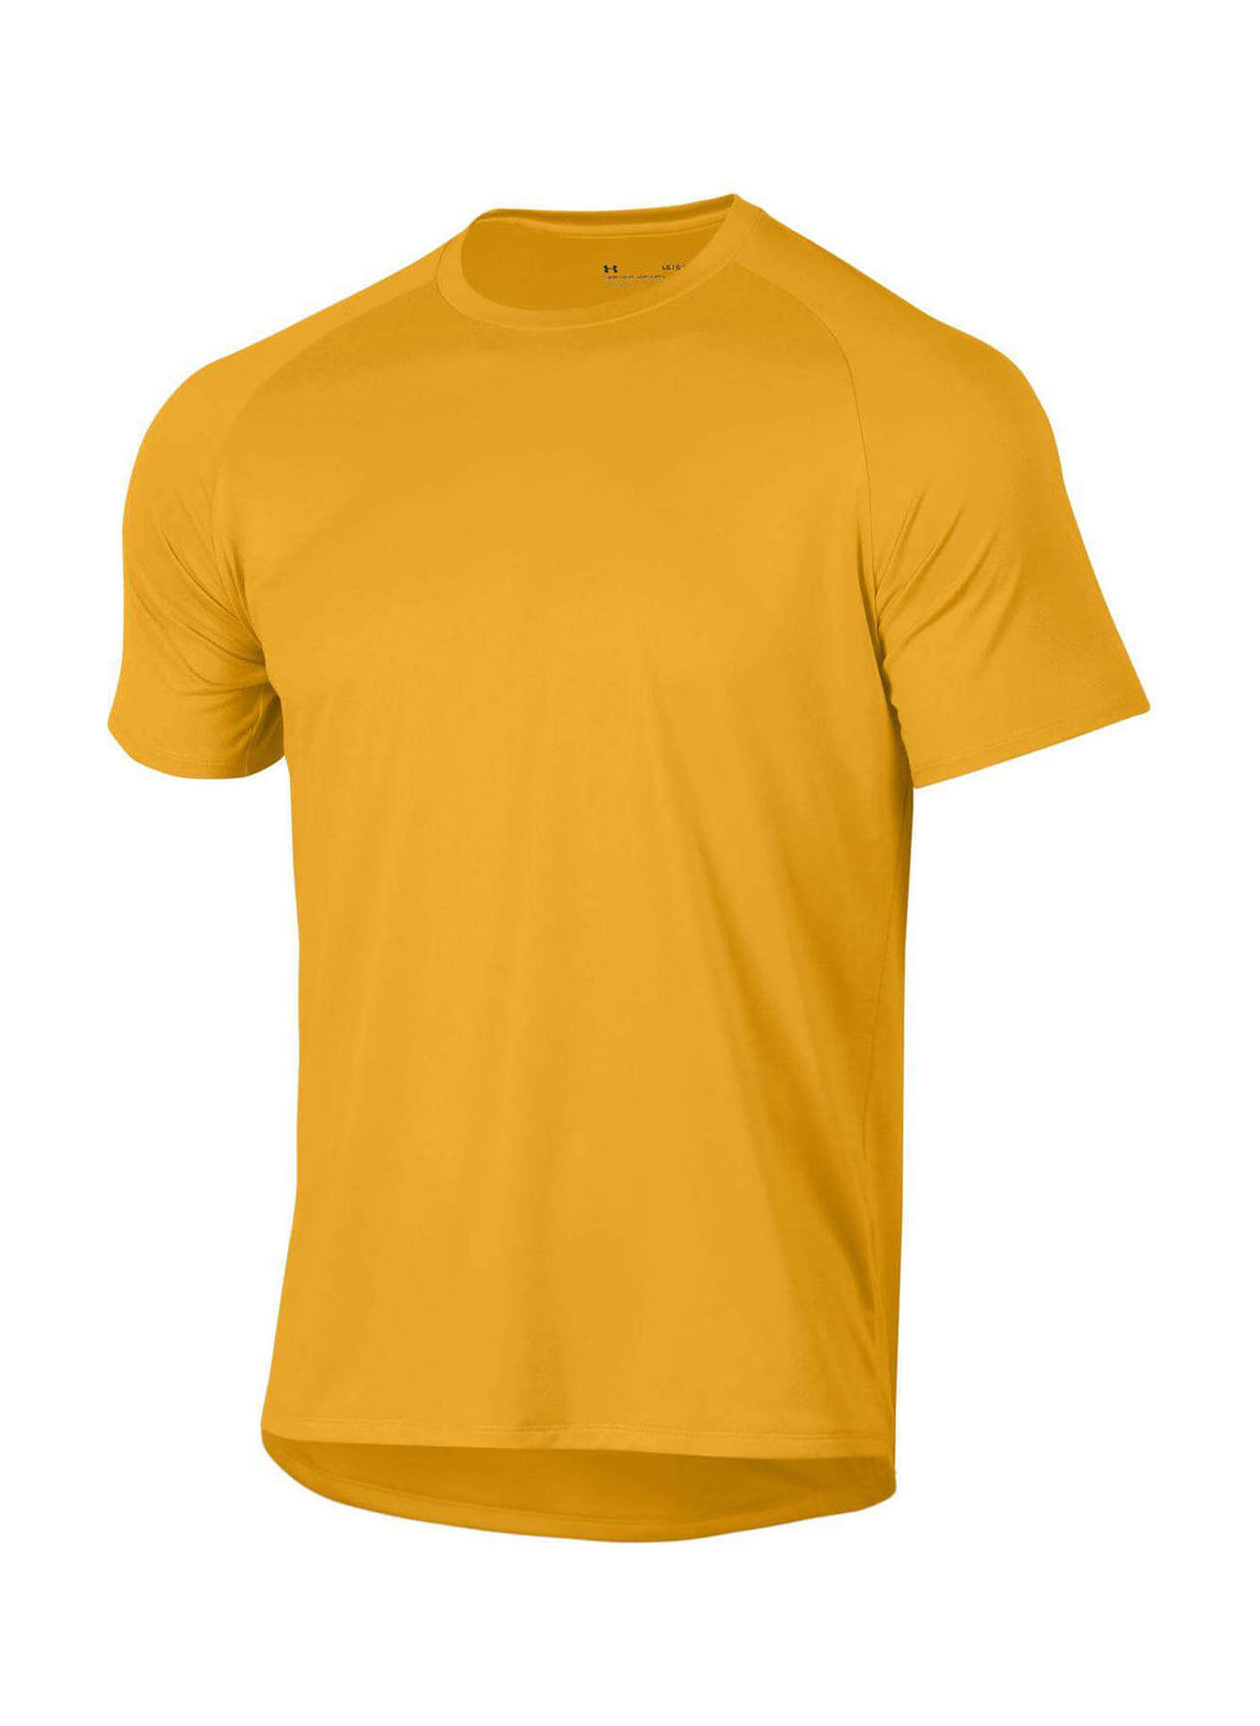 Screen Printed T-shirts | Under Armour Men's Steeltown Gold Tech T-Shirt